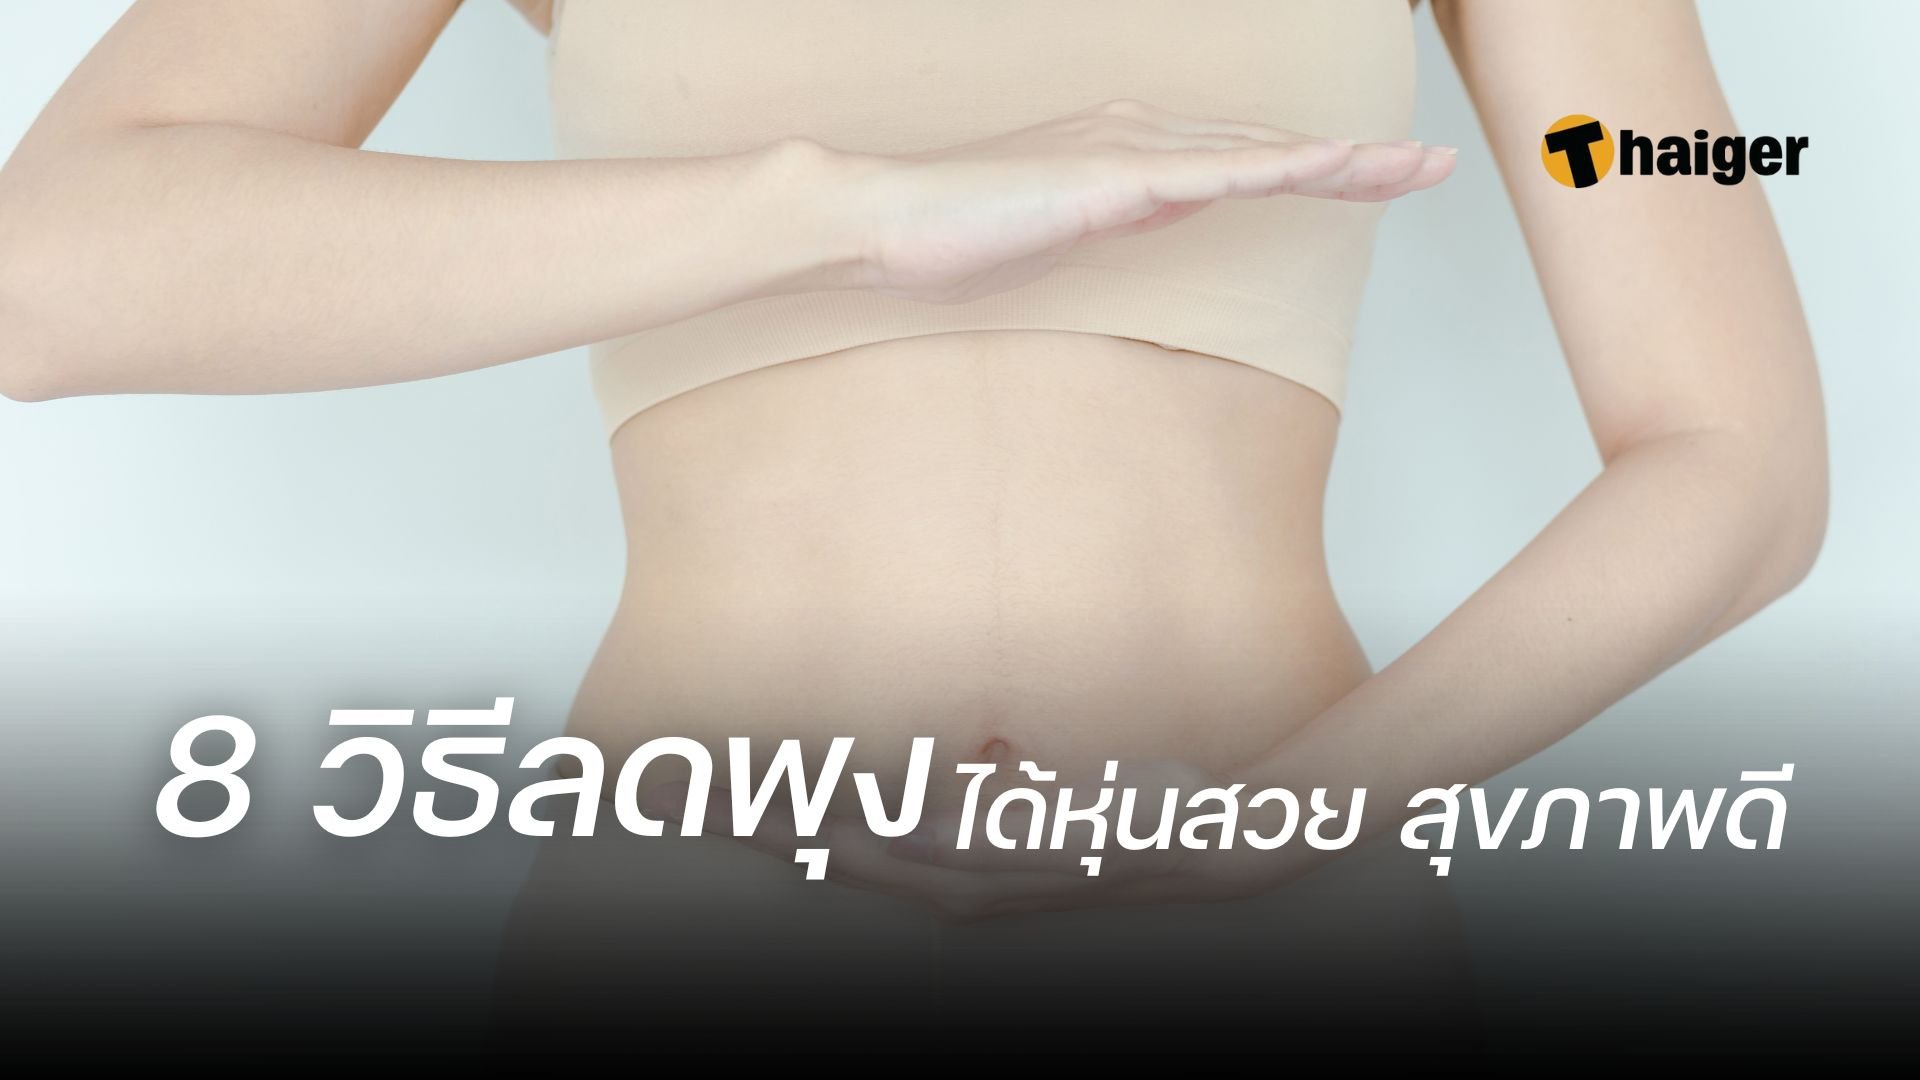 เผยทริก วิธีลดพุง สลายไขมันหน้าท้อง เห็นผลจริง ใครก็หุ่นสวยสุขภาพดีได้ |  Thaiger ข่าวไทย